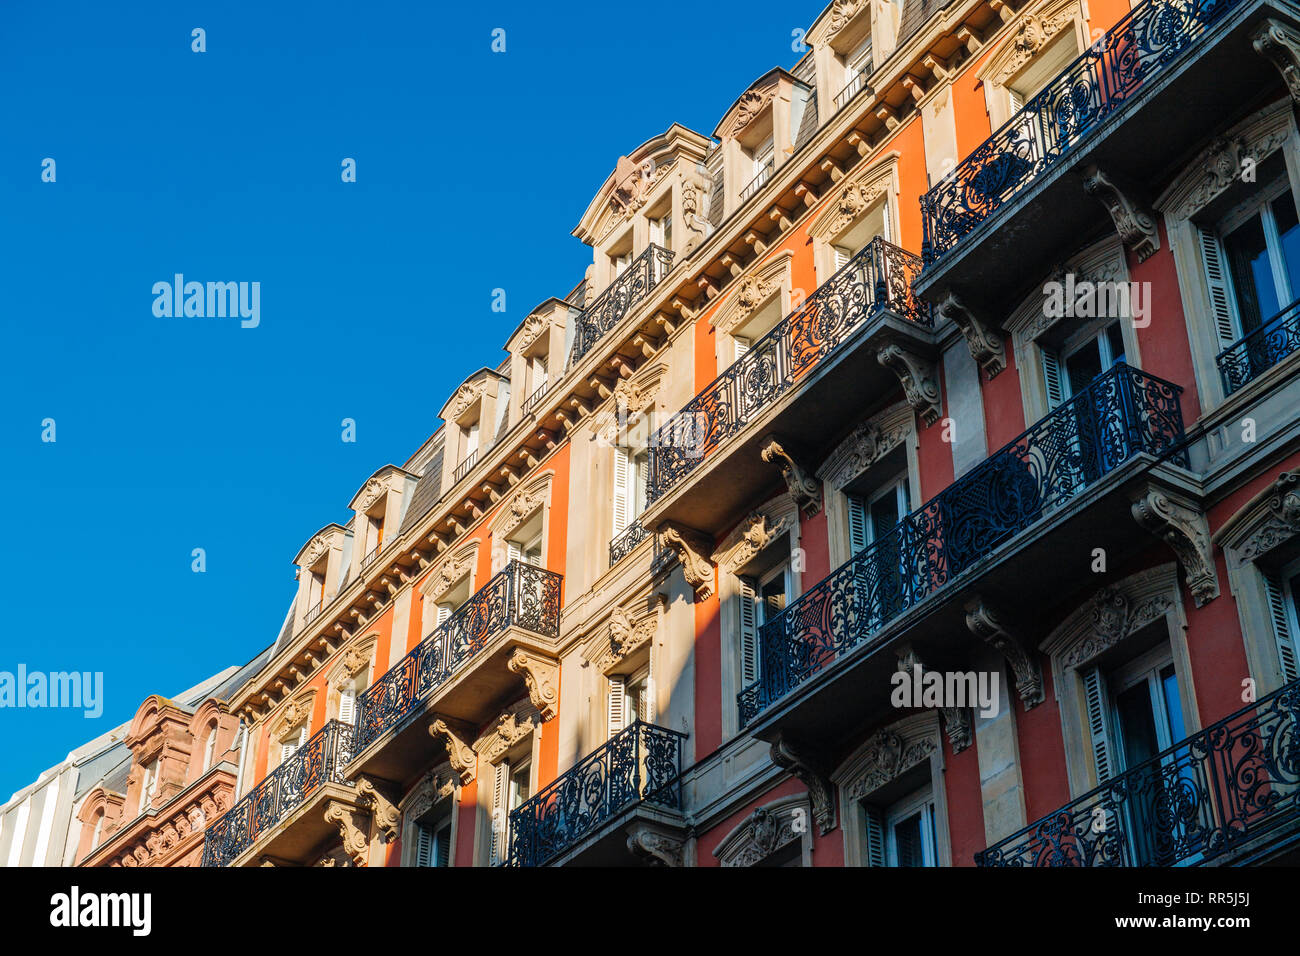 Balcons majestueuse vue de dessous de l'immeuble haussmannien français avec ciel bleu clair au début de la matinée - la gestion de propriétés immobilières en France de luxe Banque D'Images